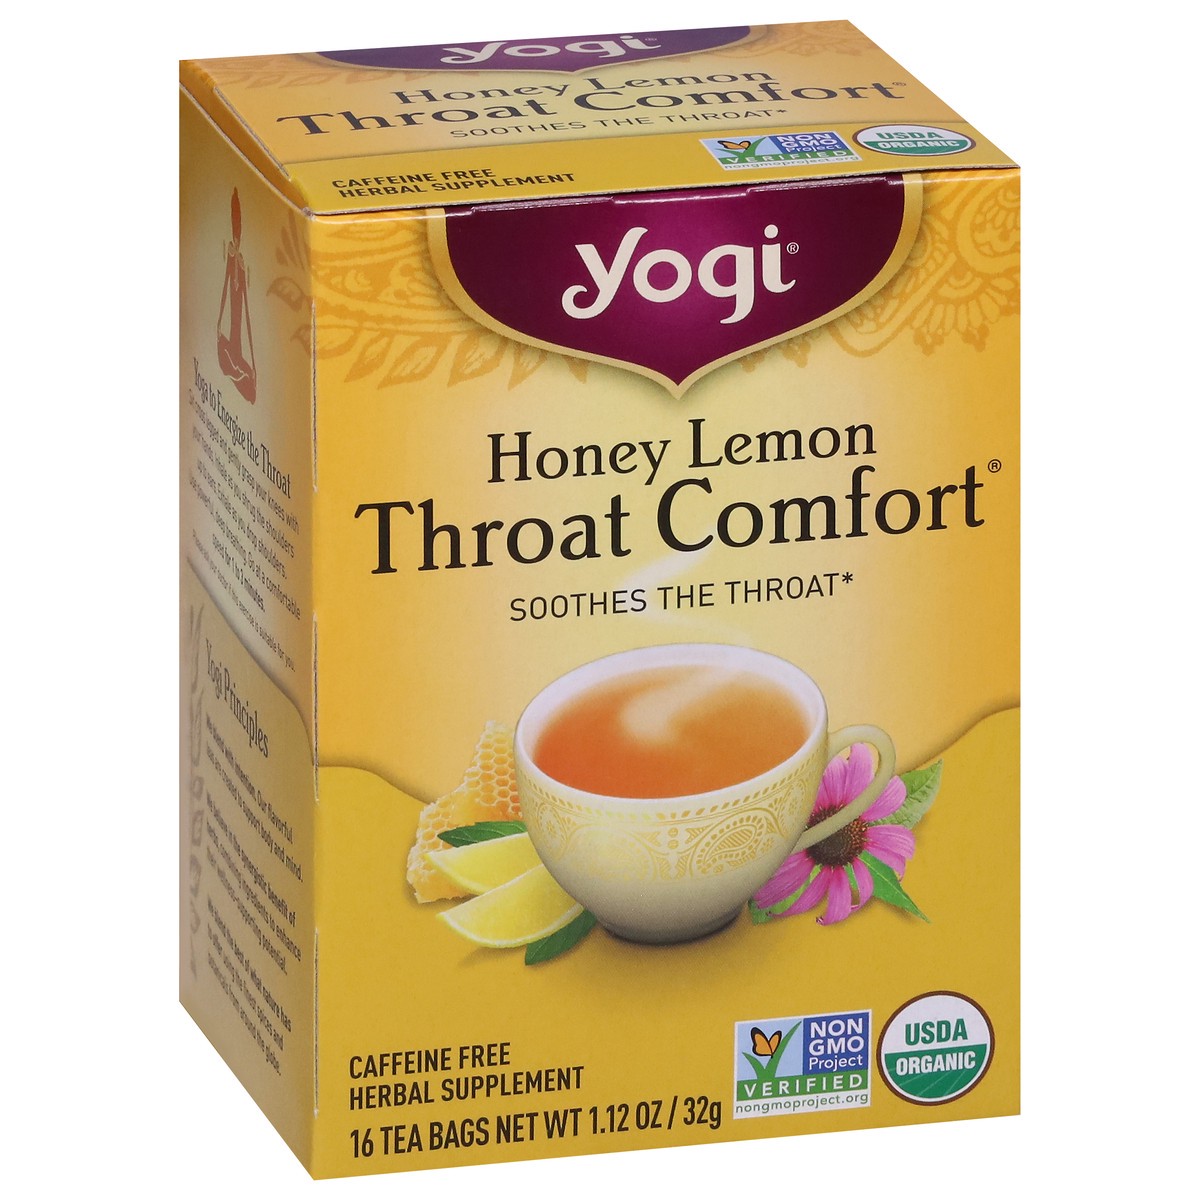 slide 8 of 9, Yogi Throat Comfort Honey Lemon Herbal Tea 16 Tea Bags, 16 ct